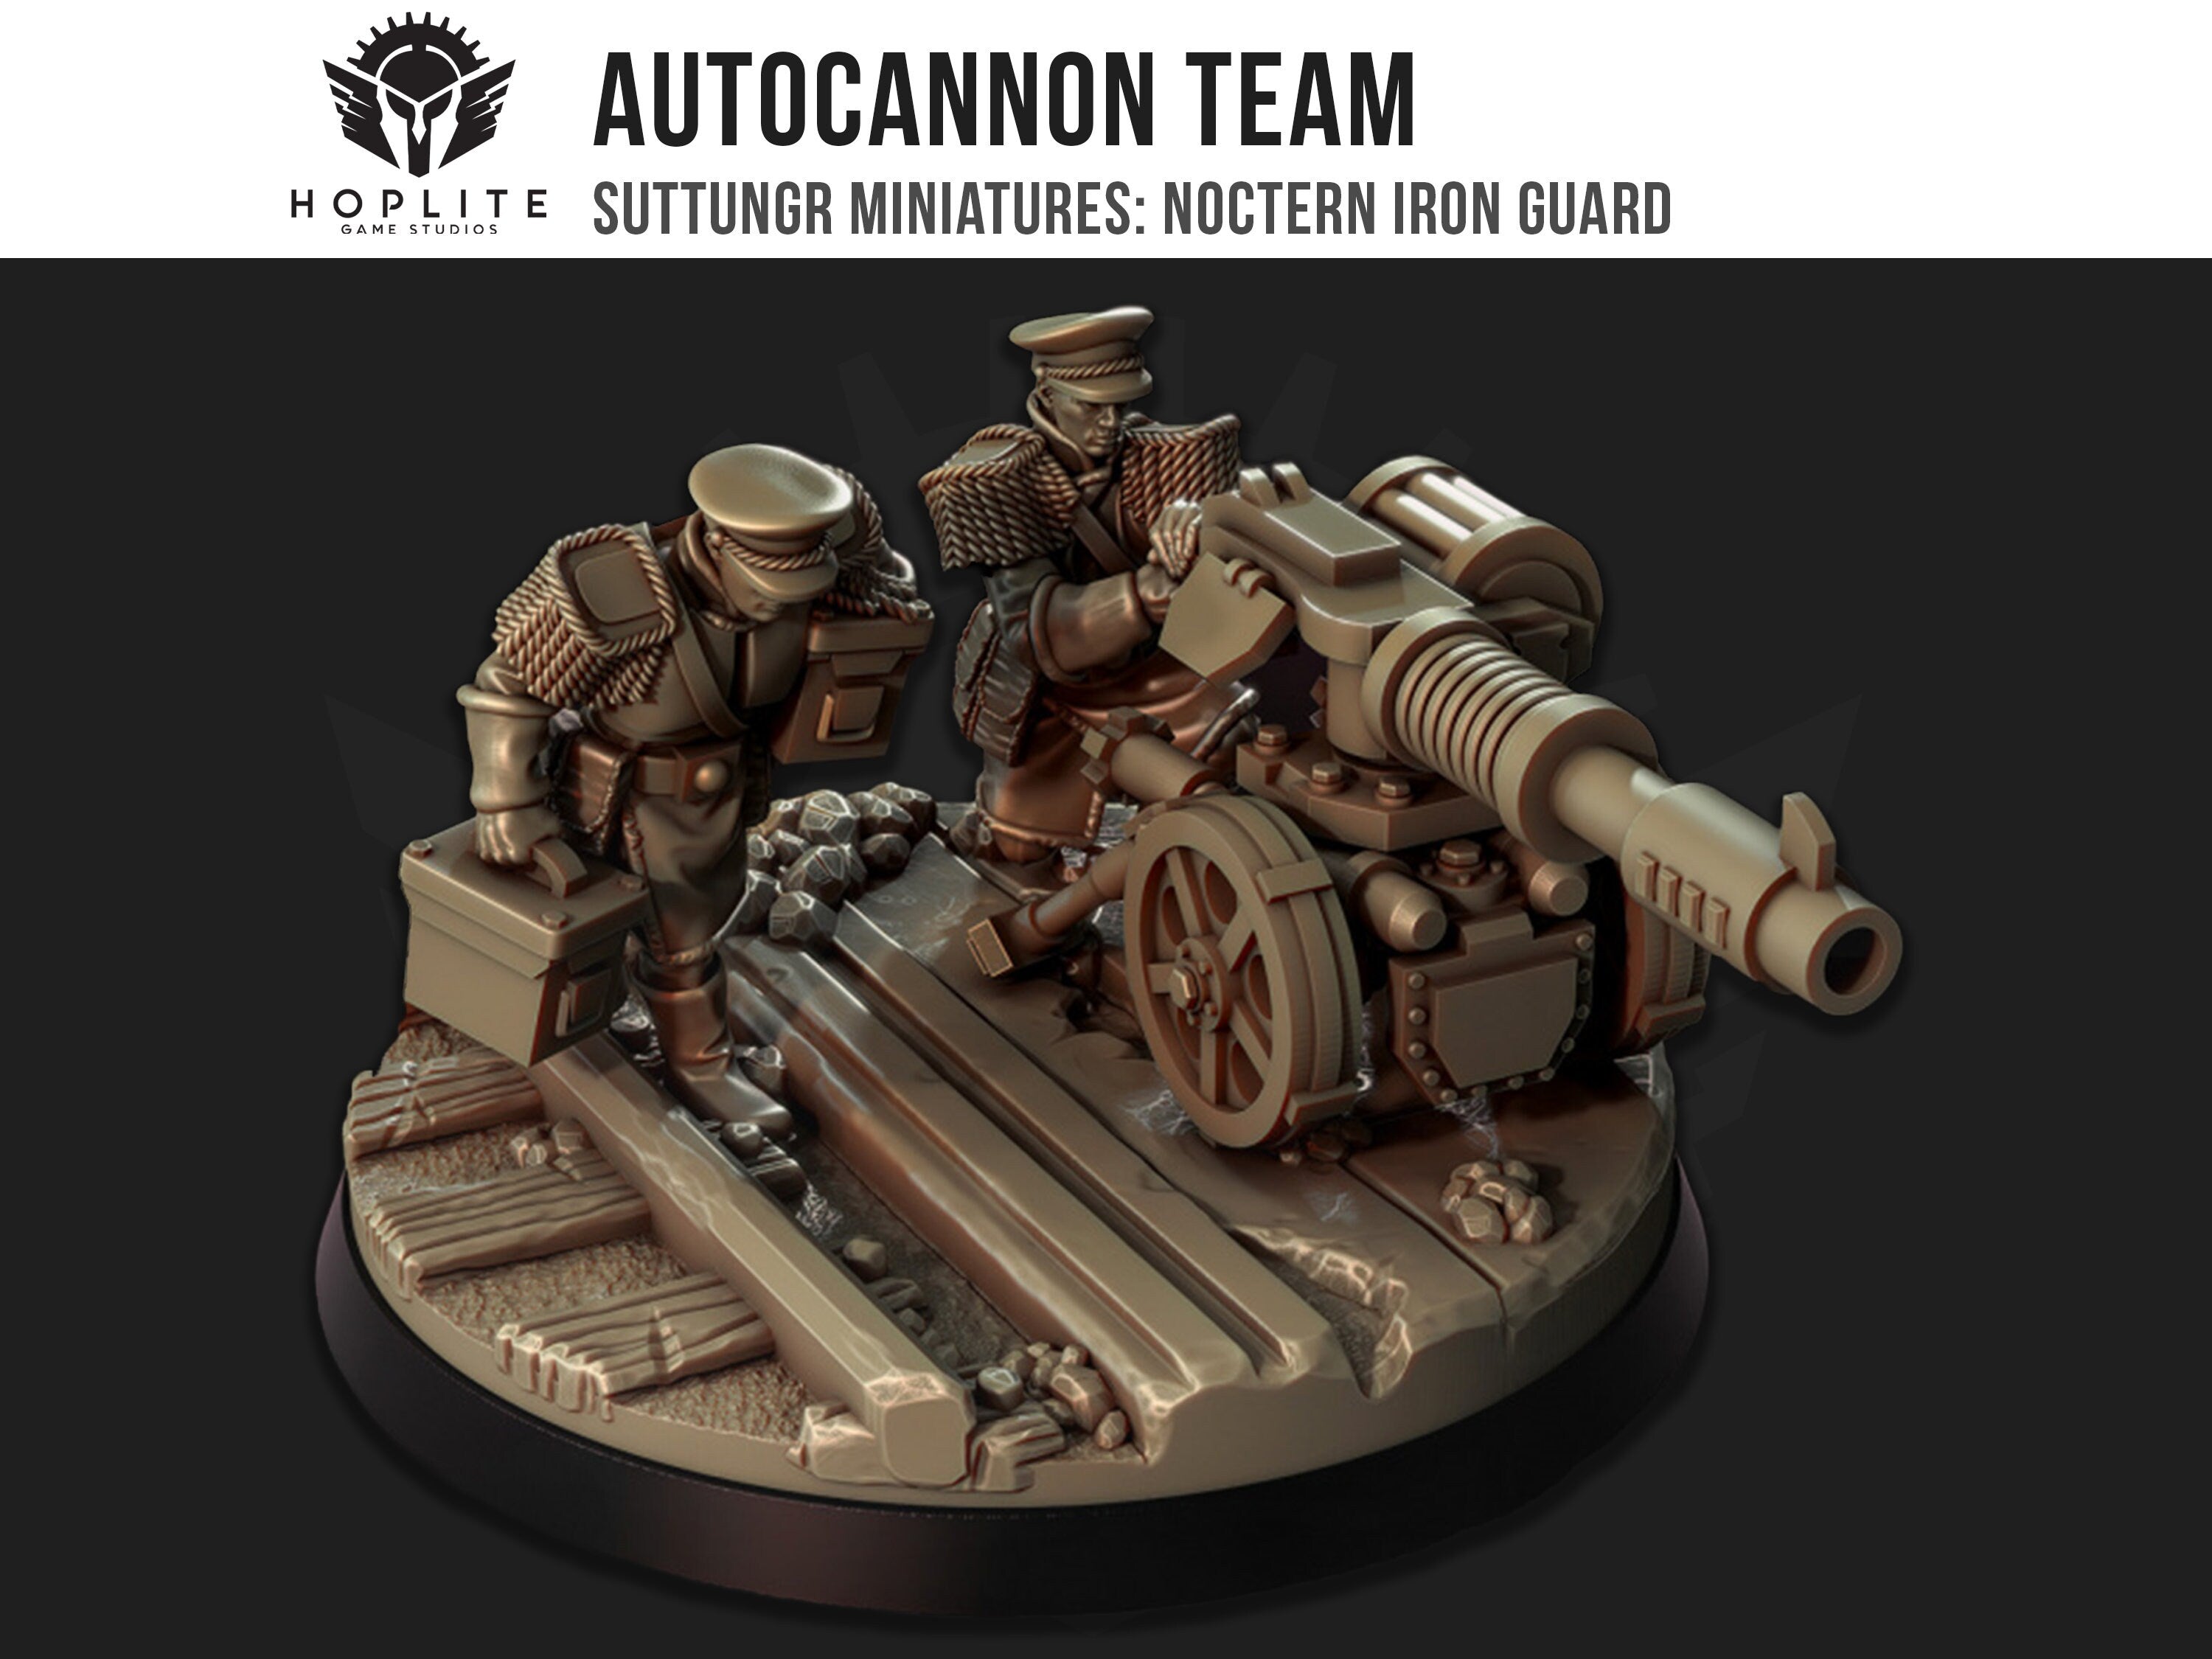 Equipo de cañón automático - Guardia de Hierro Noctern - Mordian - Grimdark Future - Suttungr Miniatures